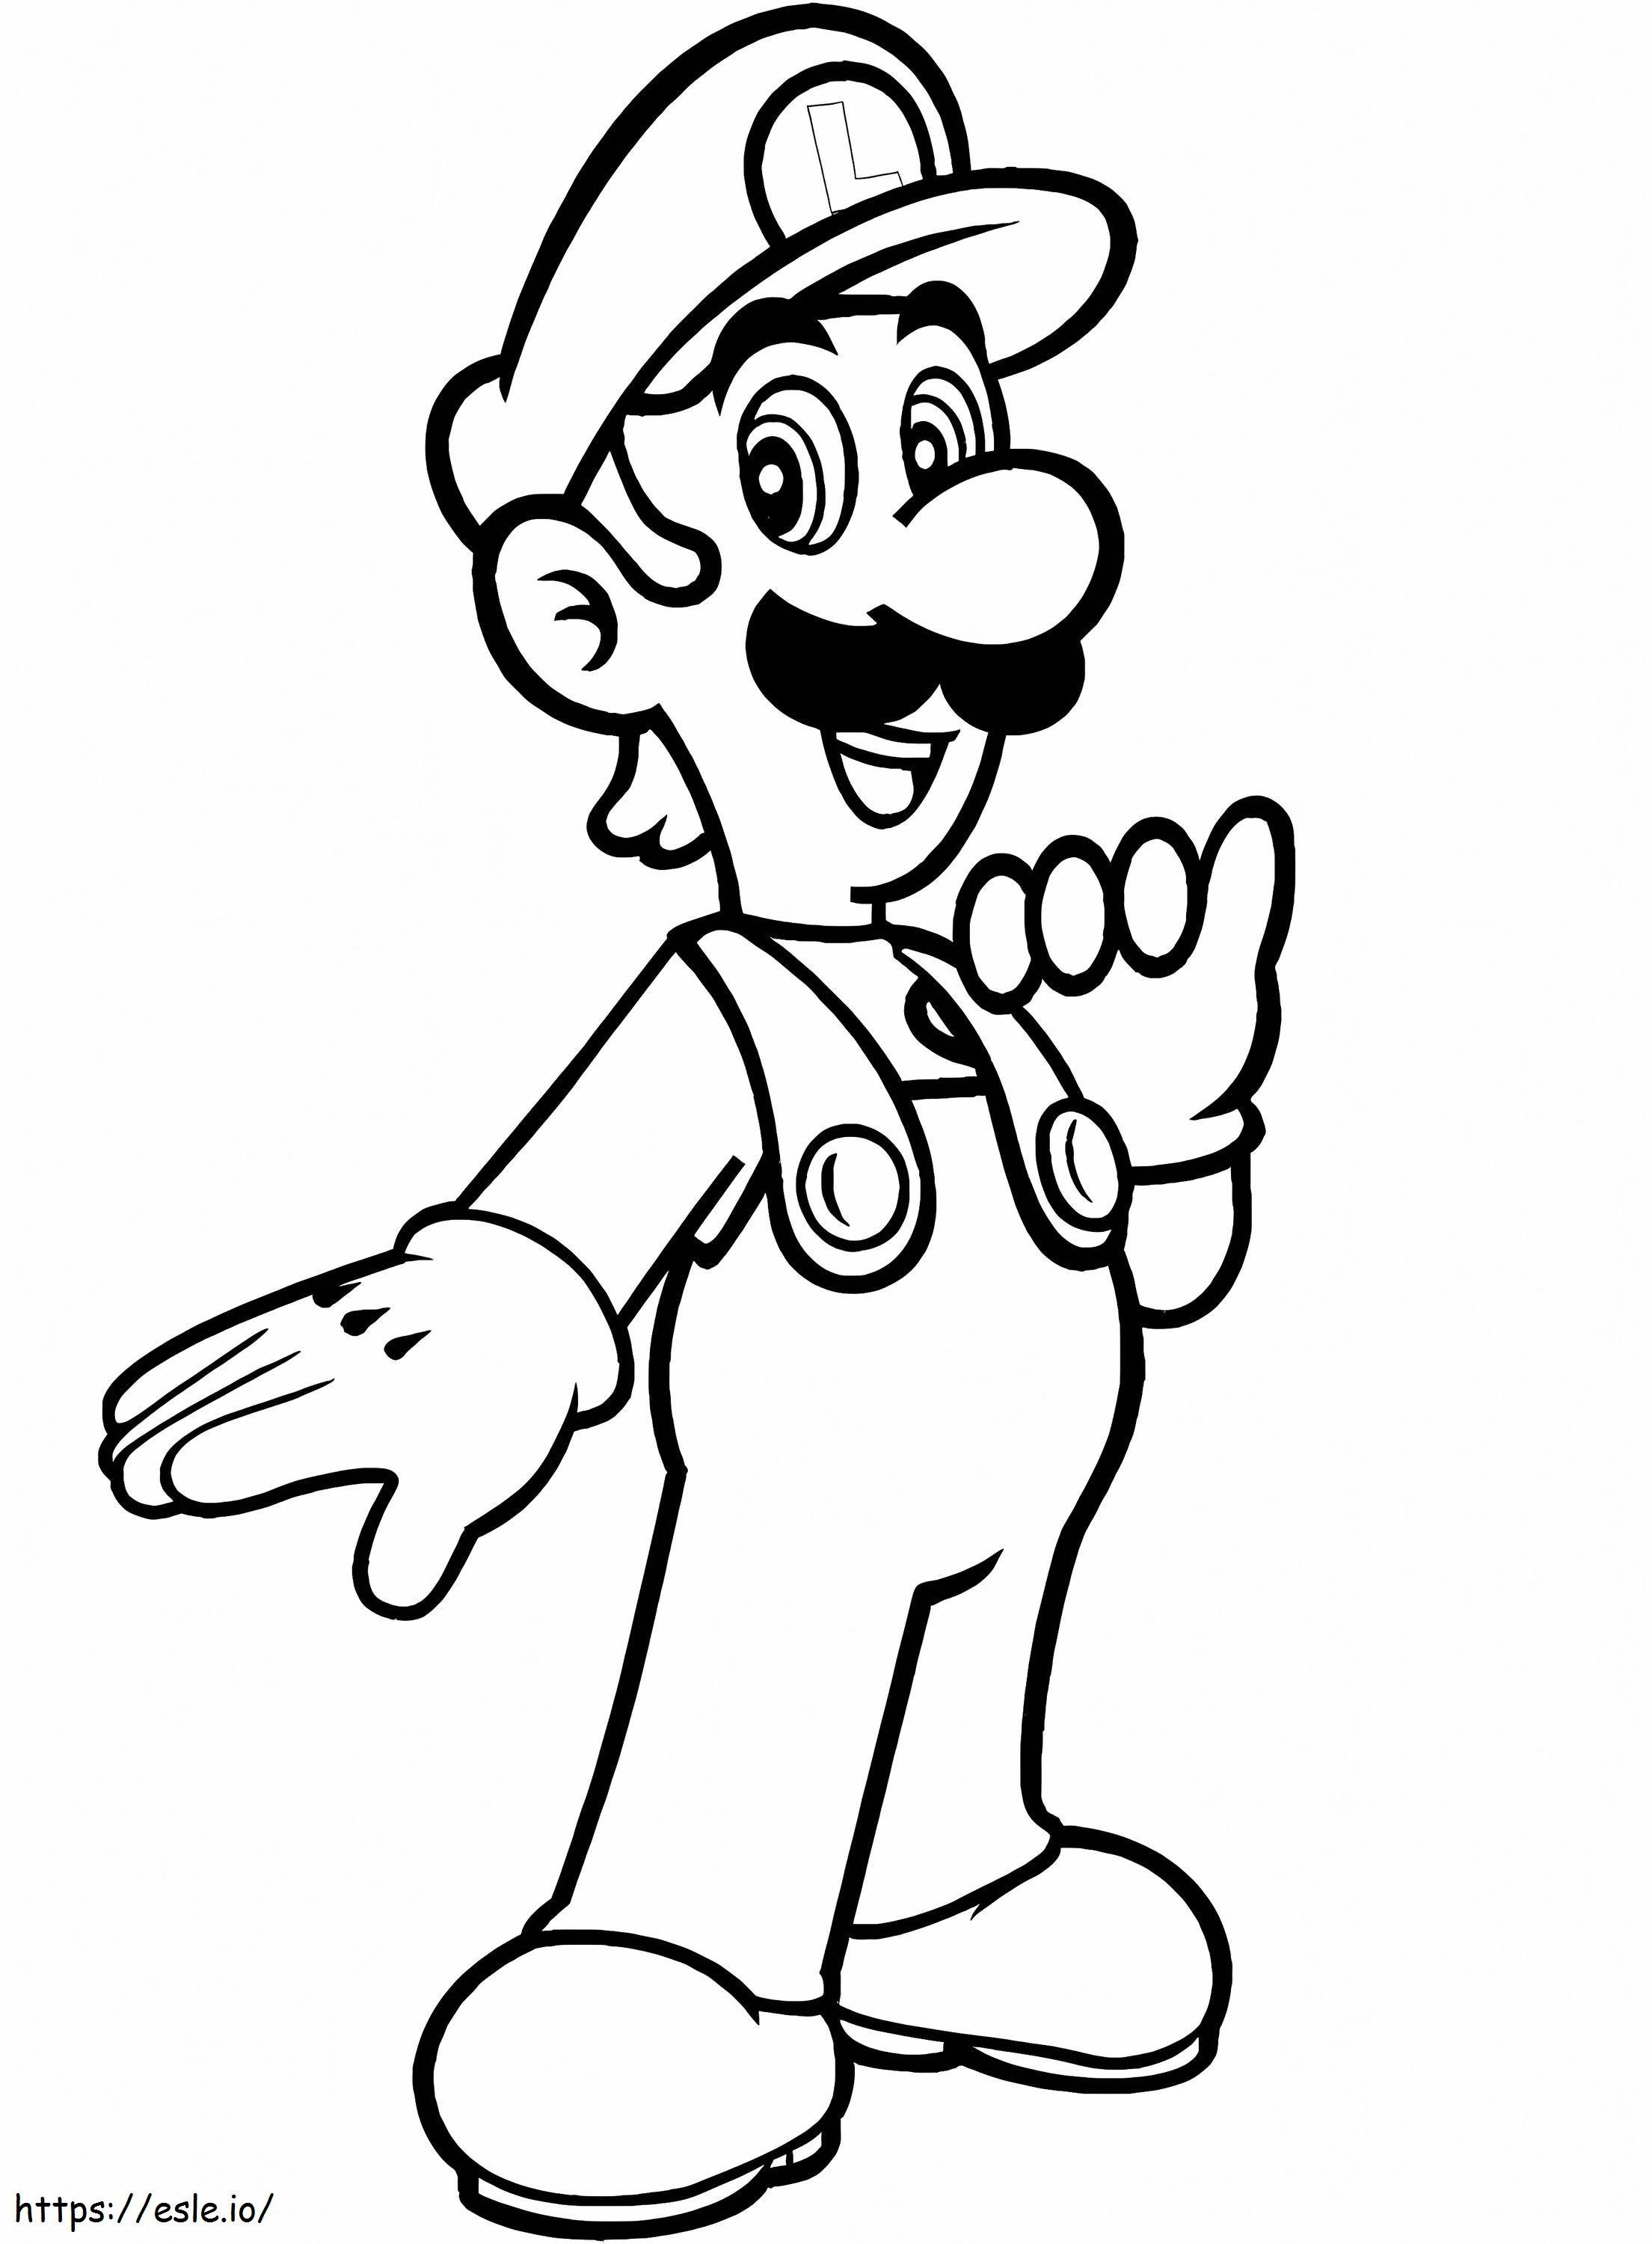 Luigi From Mario Bros. coloring page